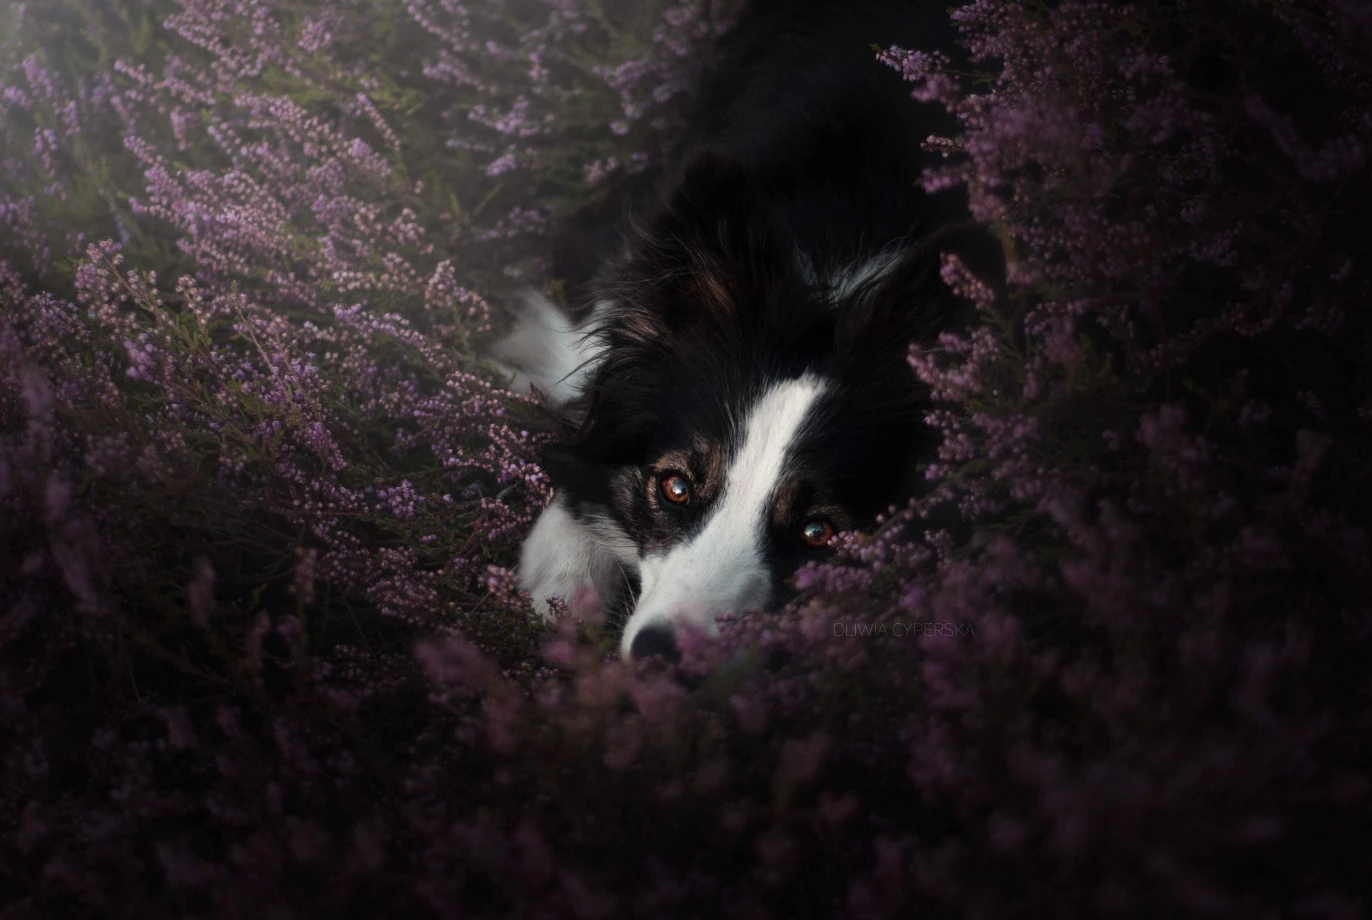 fotograf kartuzy zira-photo portfolio zdjecia zwierzat sesja zdjeciowa konie psy koty